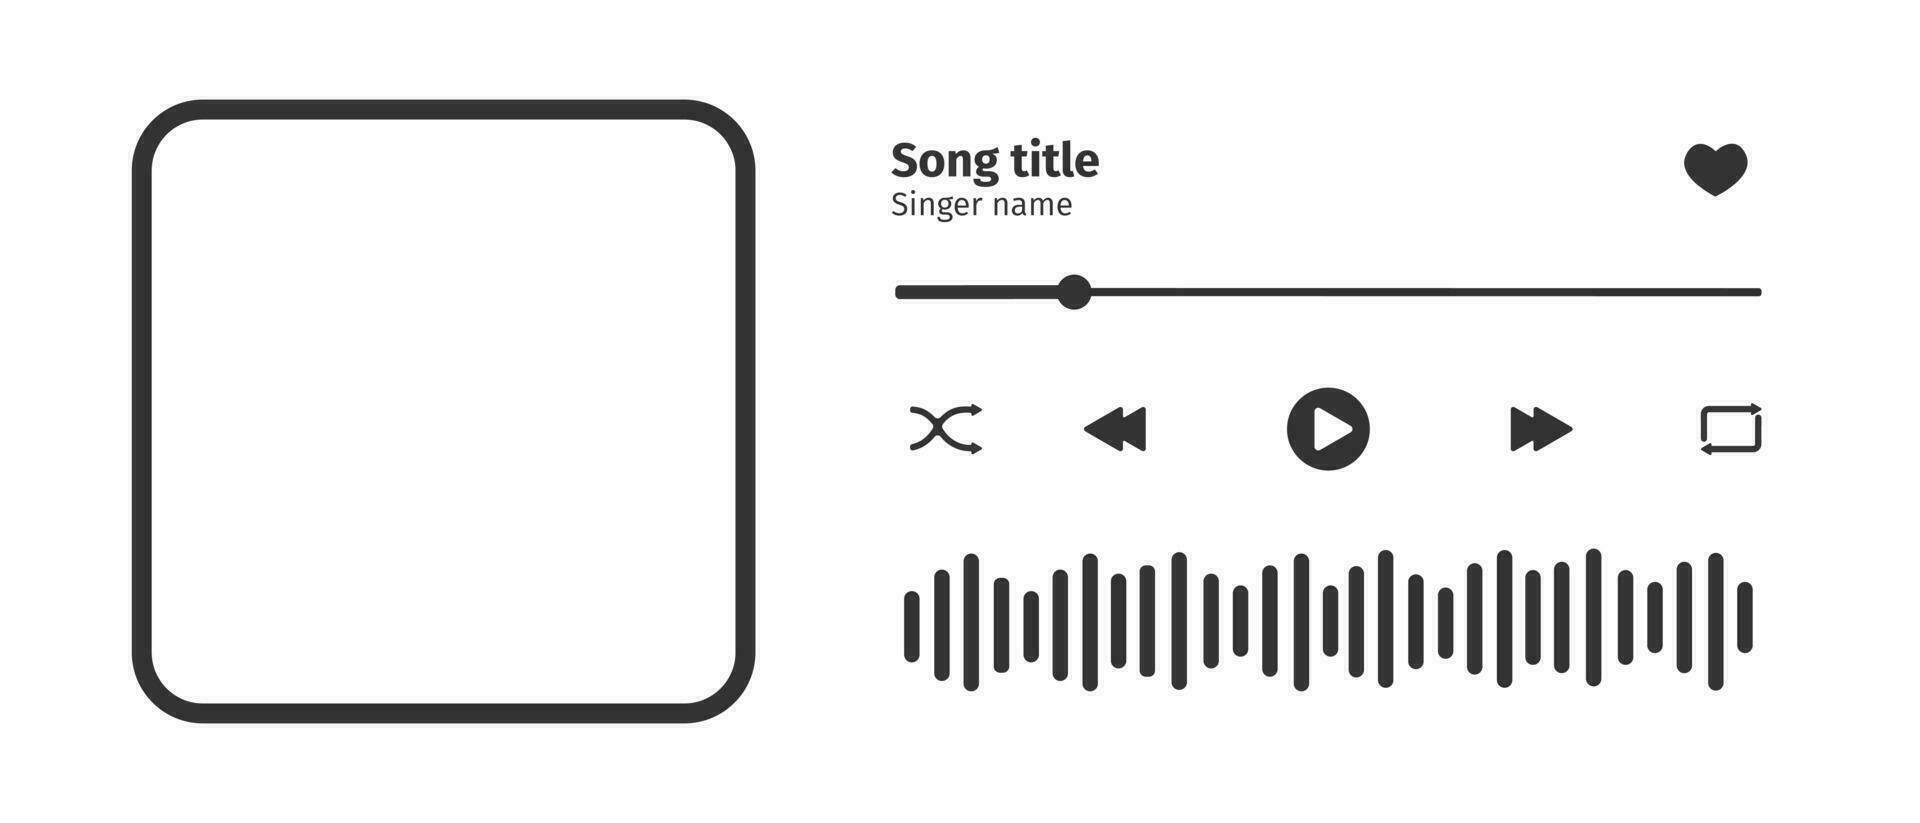 l'audio joueur interface conception élément avec chanson photo cadre, boutons, chargement bar et du son vague. horizontal arrangement vecteur